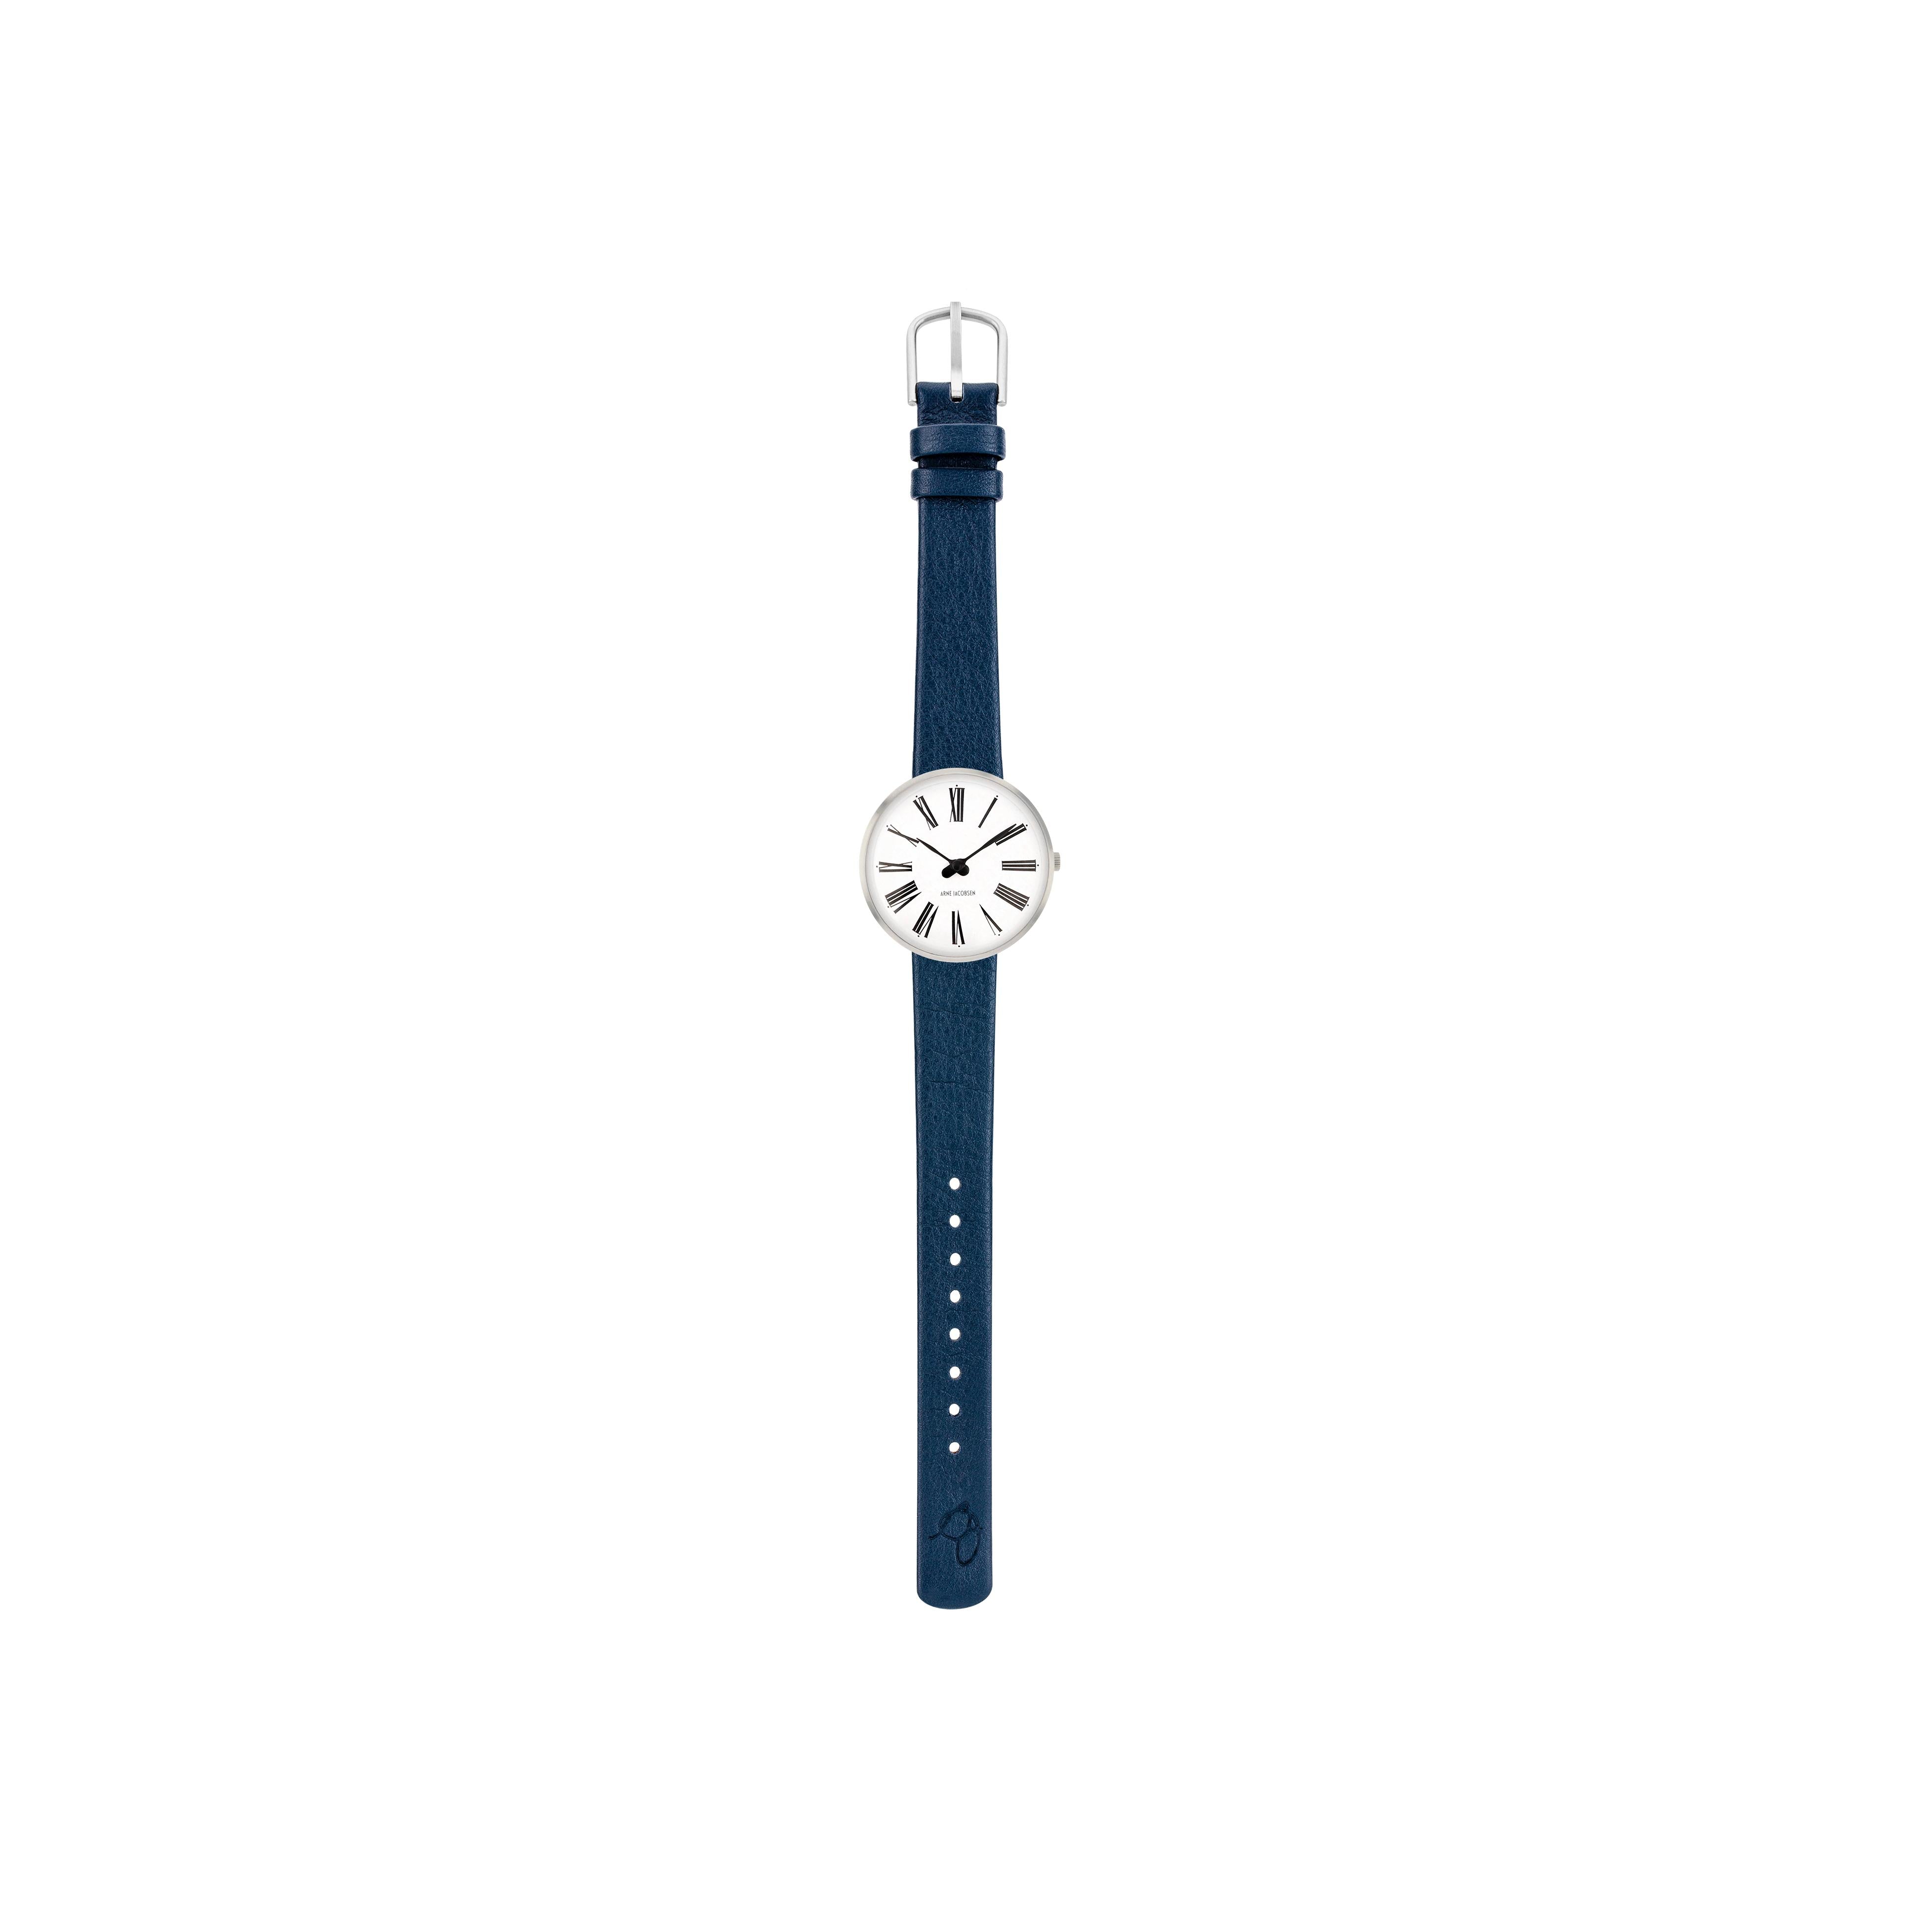 Arne Jacobsen Roman armbånd klokke Ø30, blå stropp